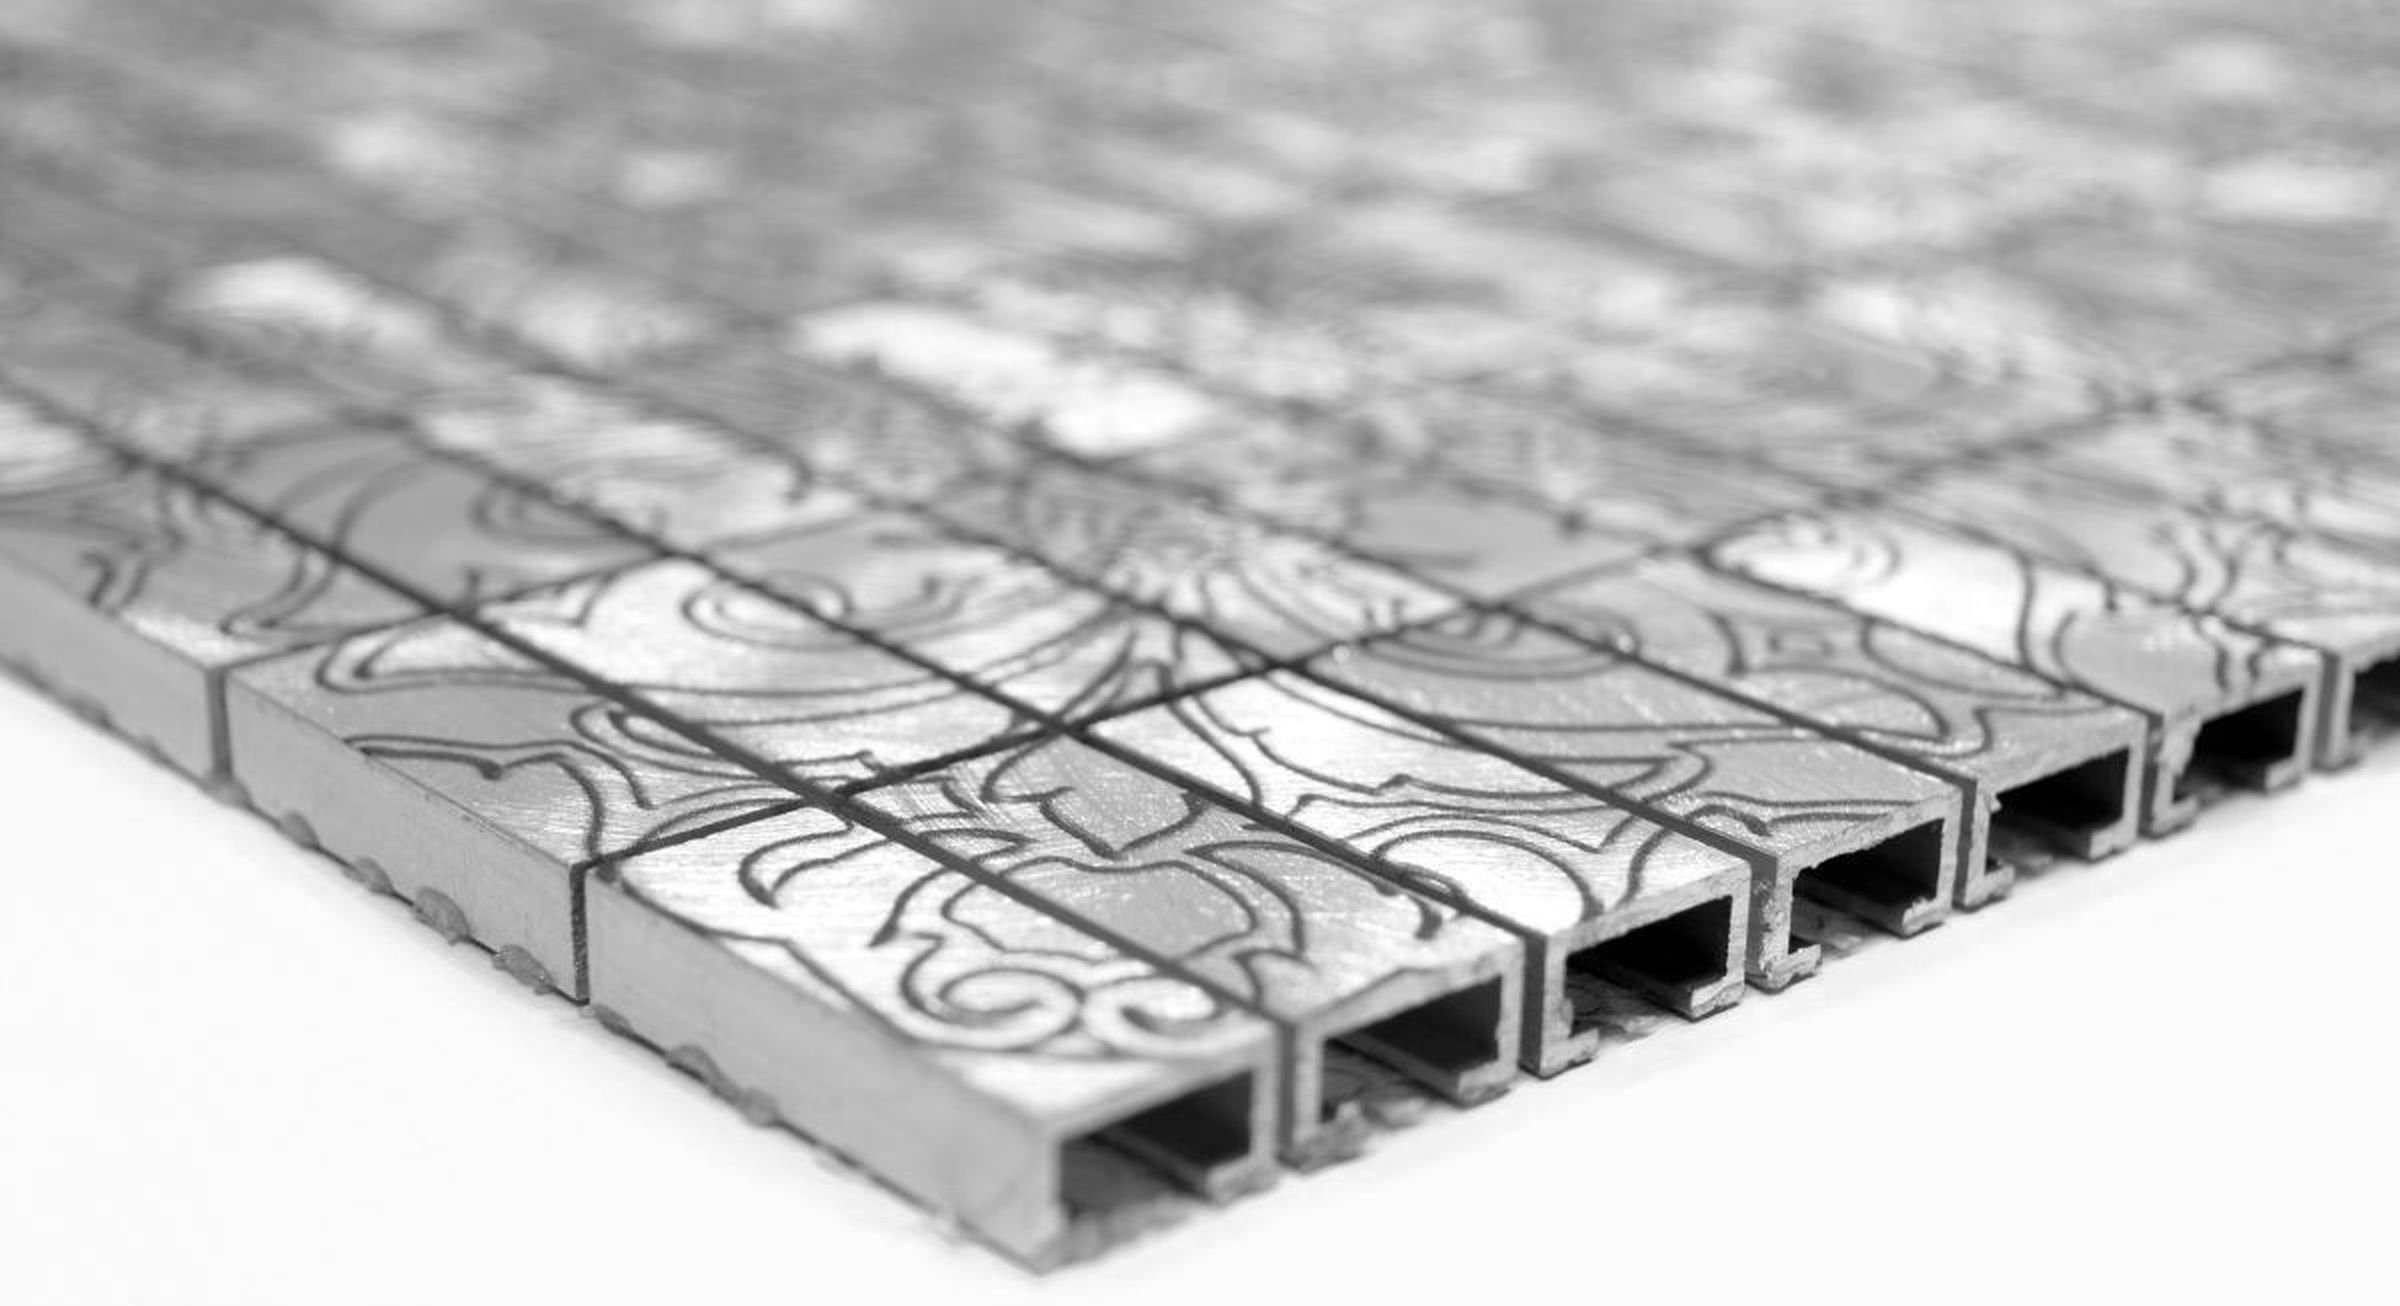 Mosani Mosaikfliesen silber Küchenrückwand Fliese Fliesenspiegel Mosaik Aluminium